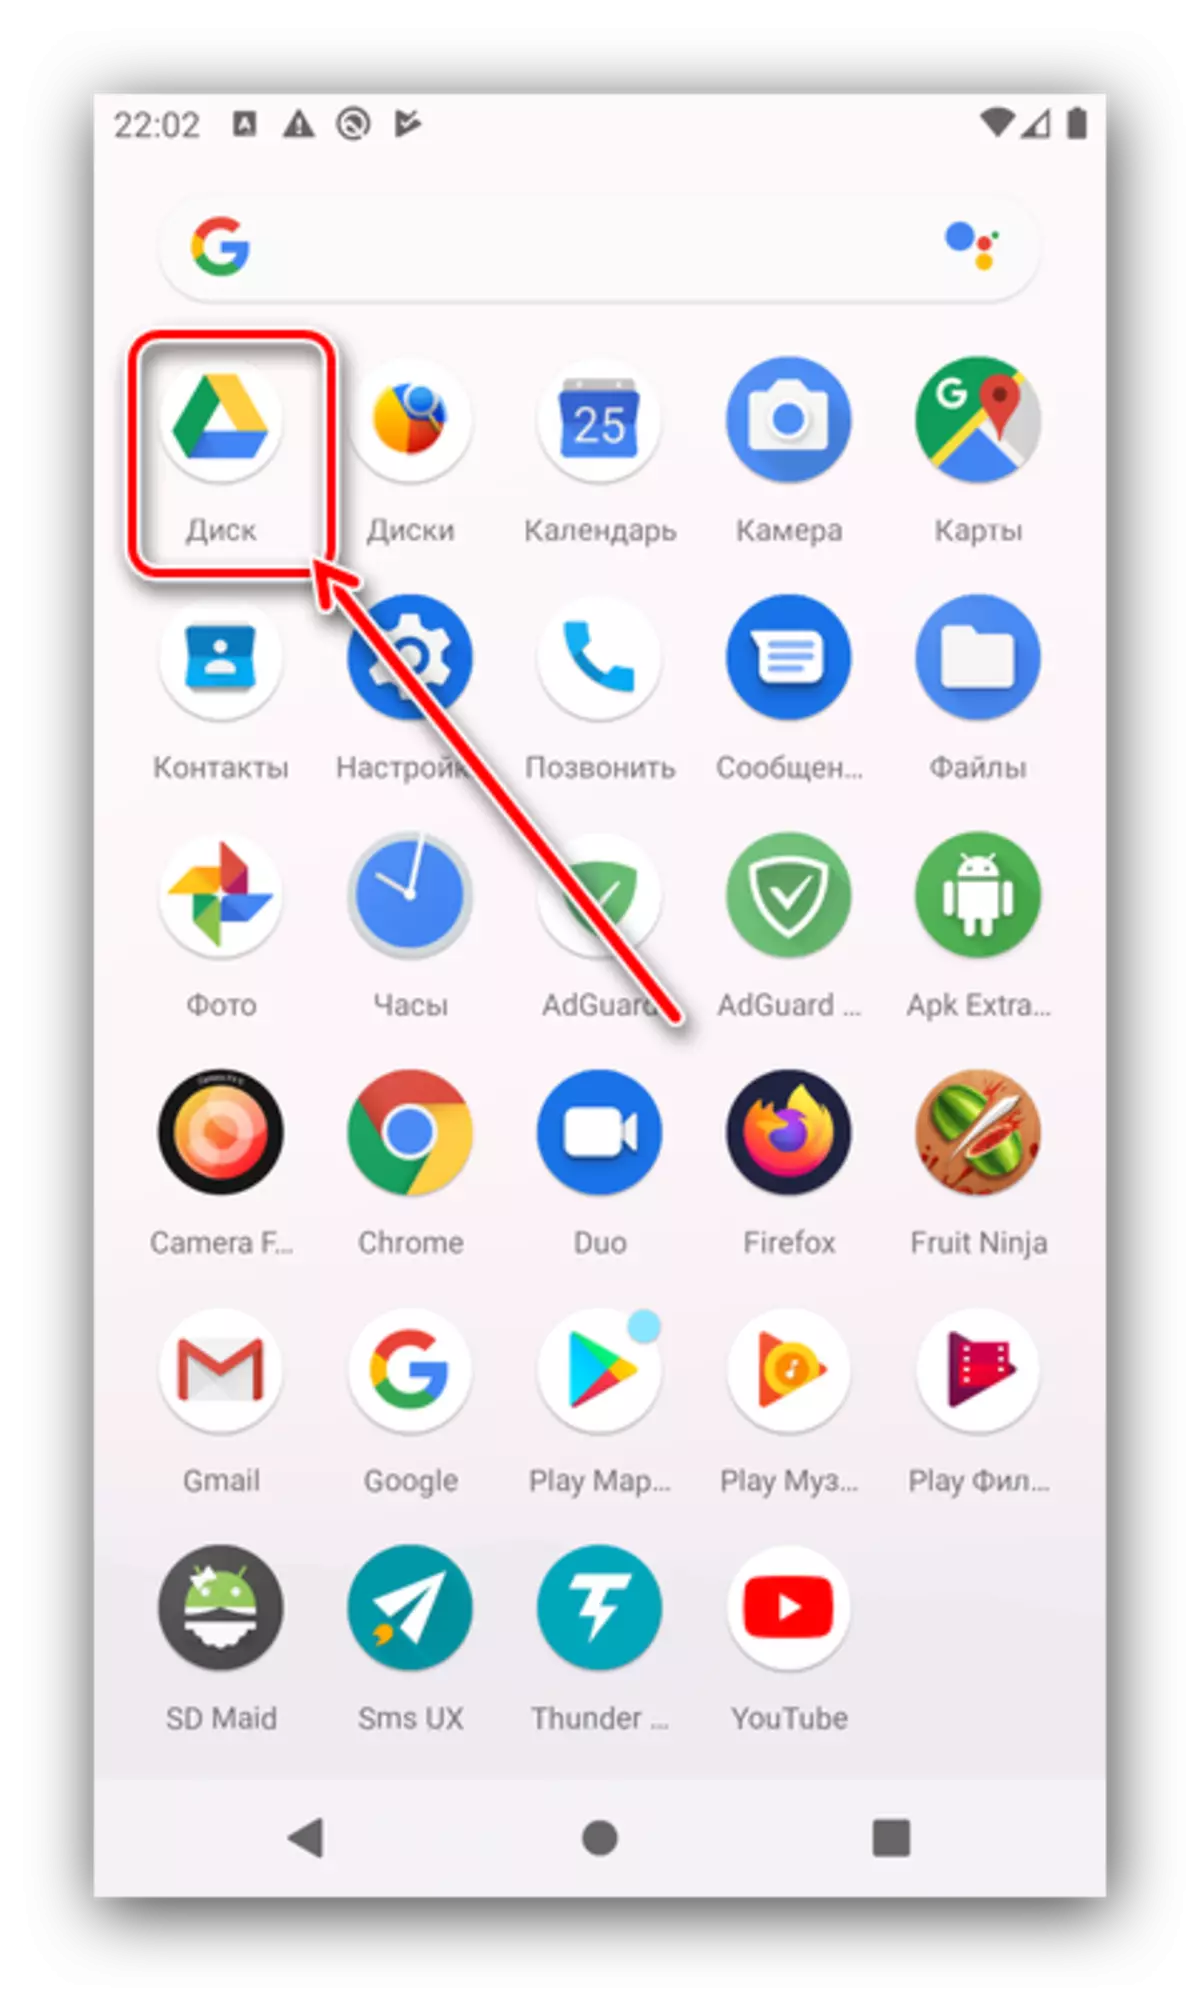 Fungura Google Gukurikirana Kugera Kubicu bya Android